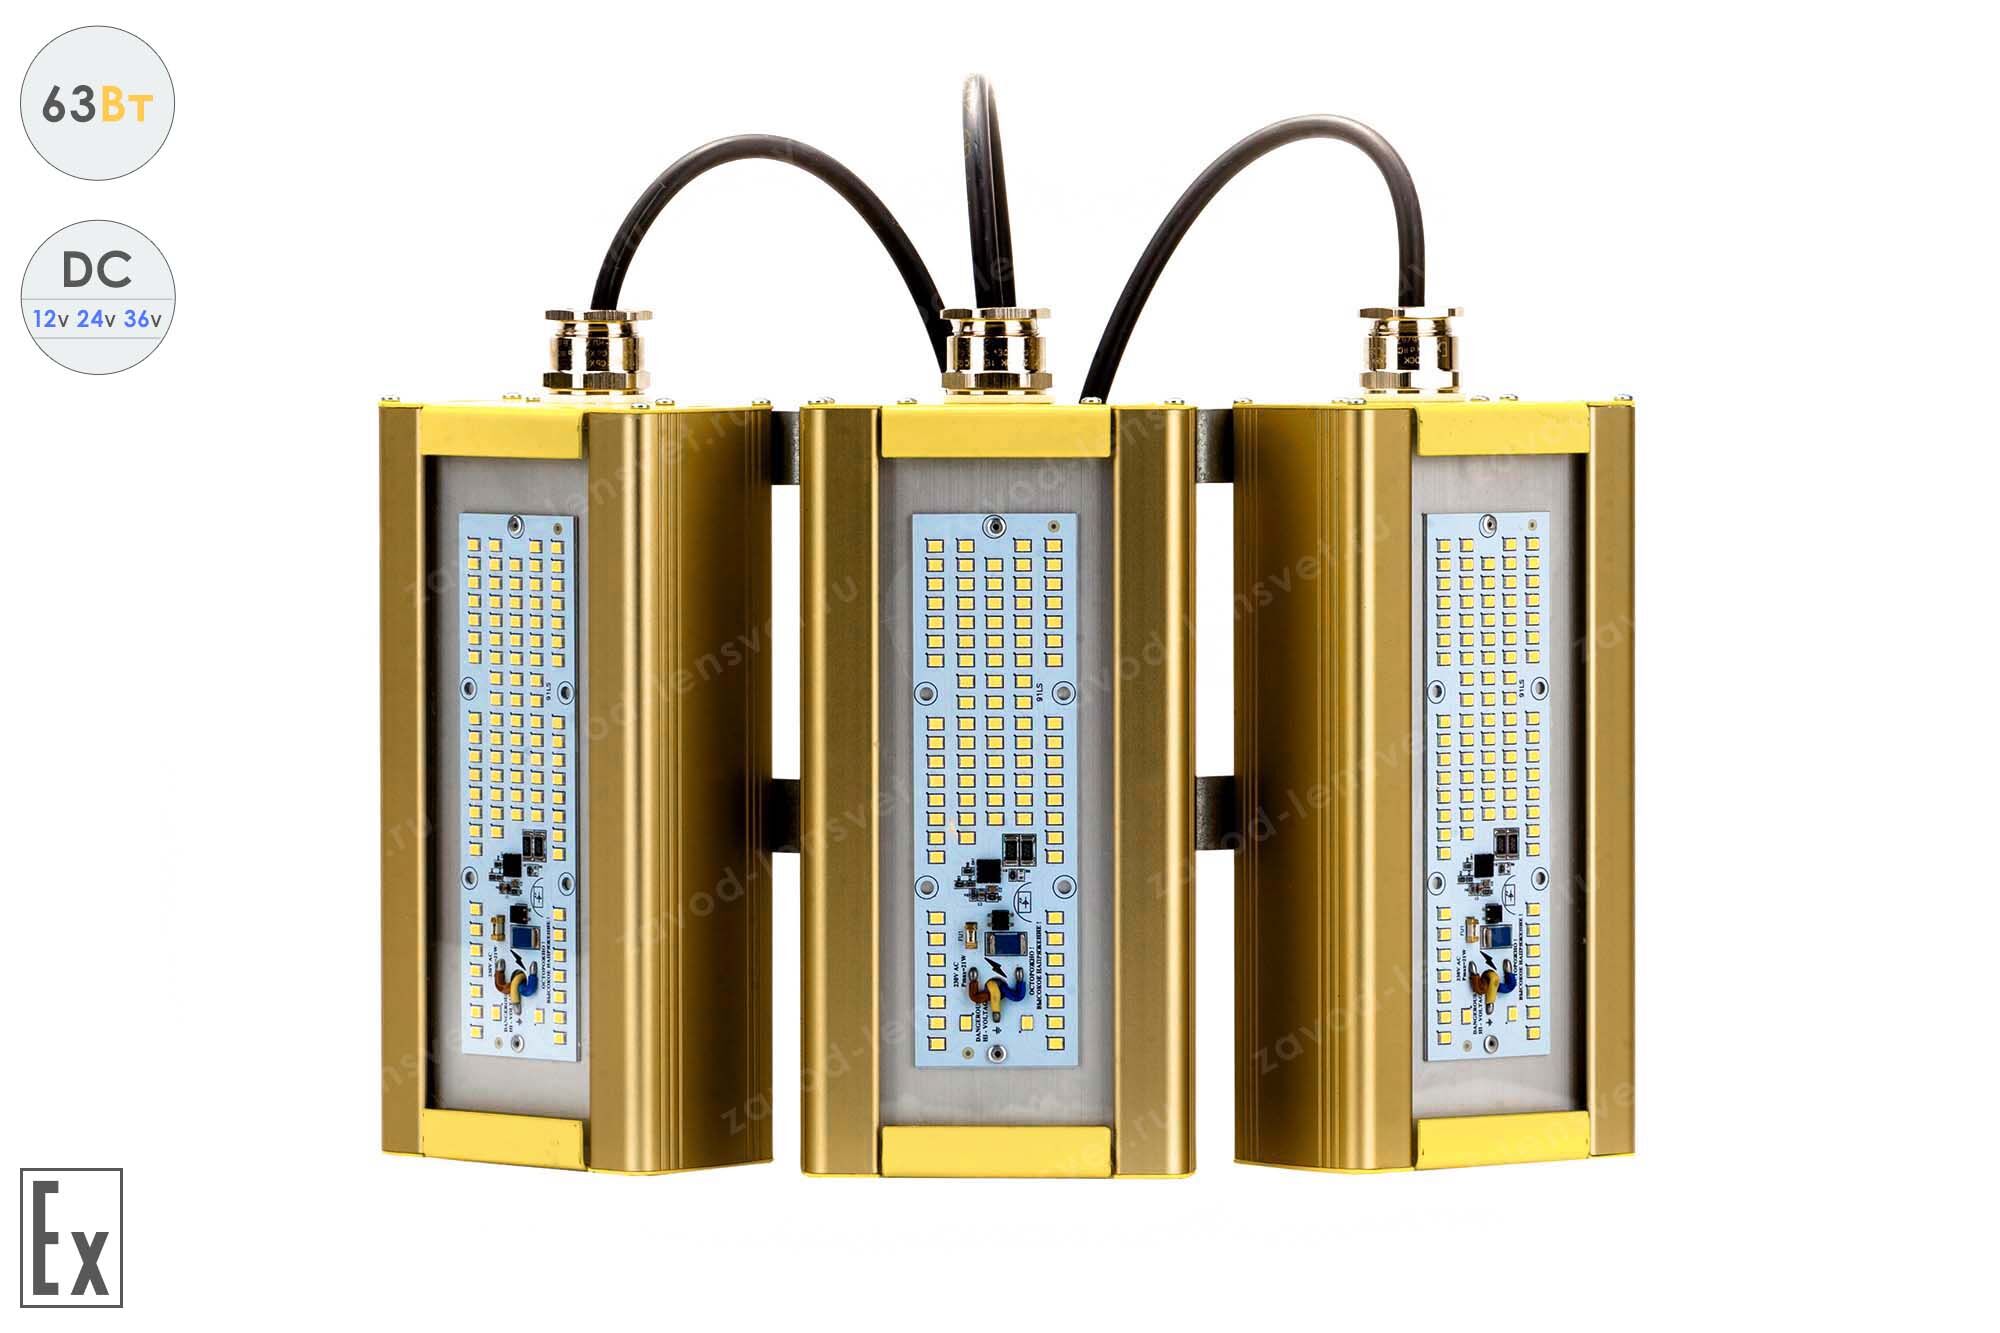 Светодиодный светильник Низковольтный Модуль Взрывозащищенный GOLD, консоль KM-3, 63 Вт, 120°